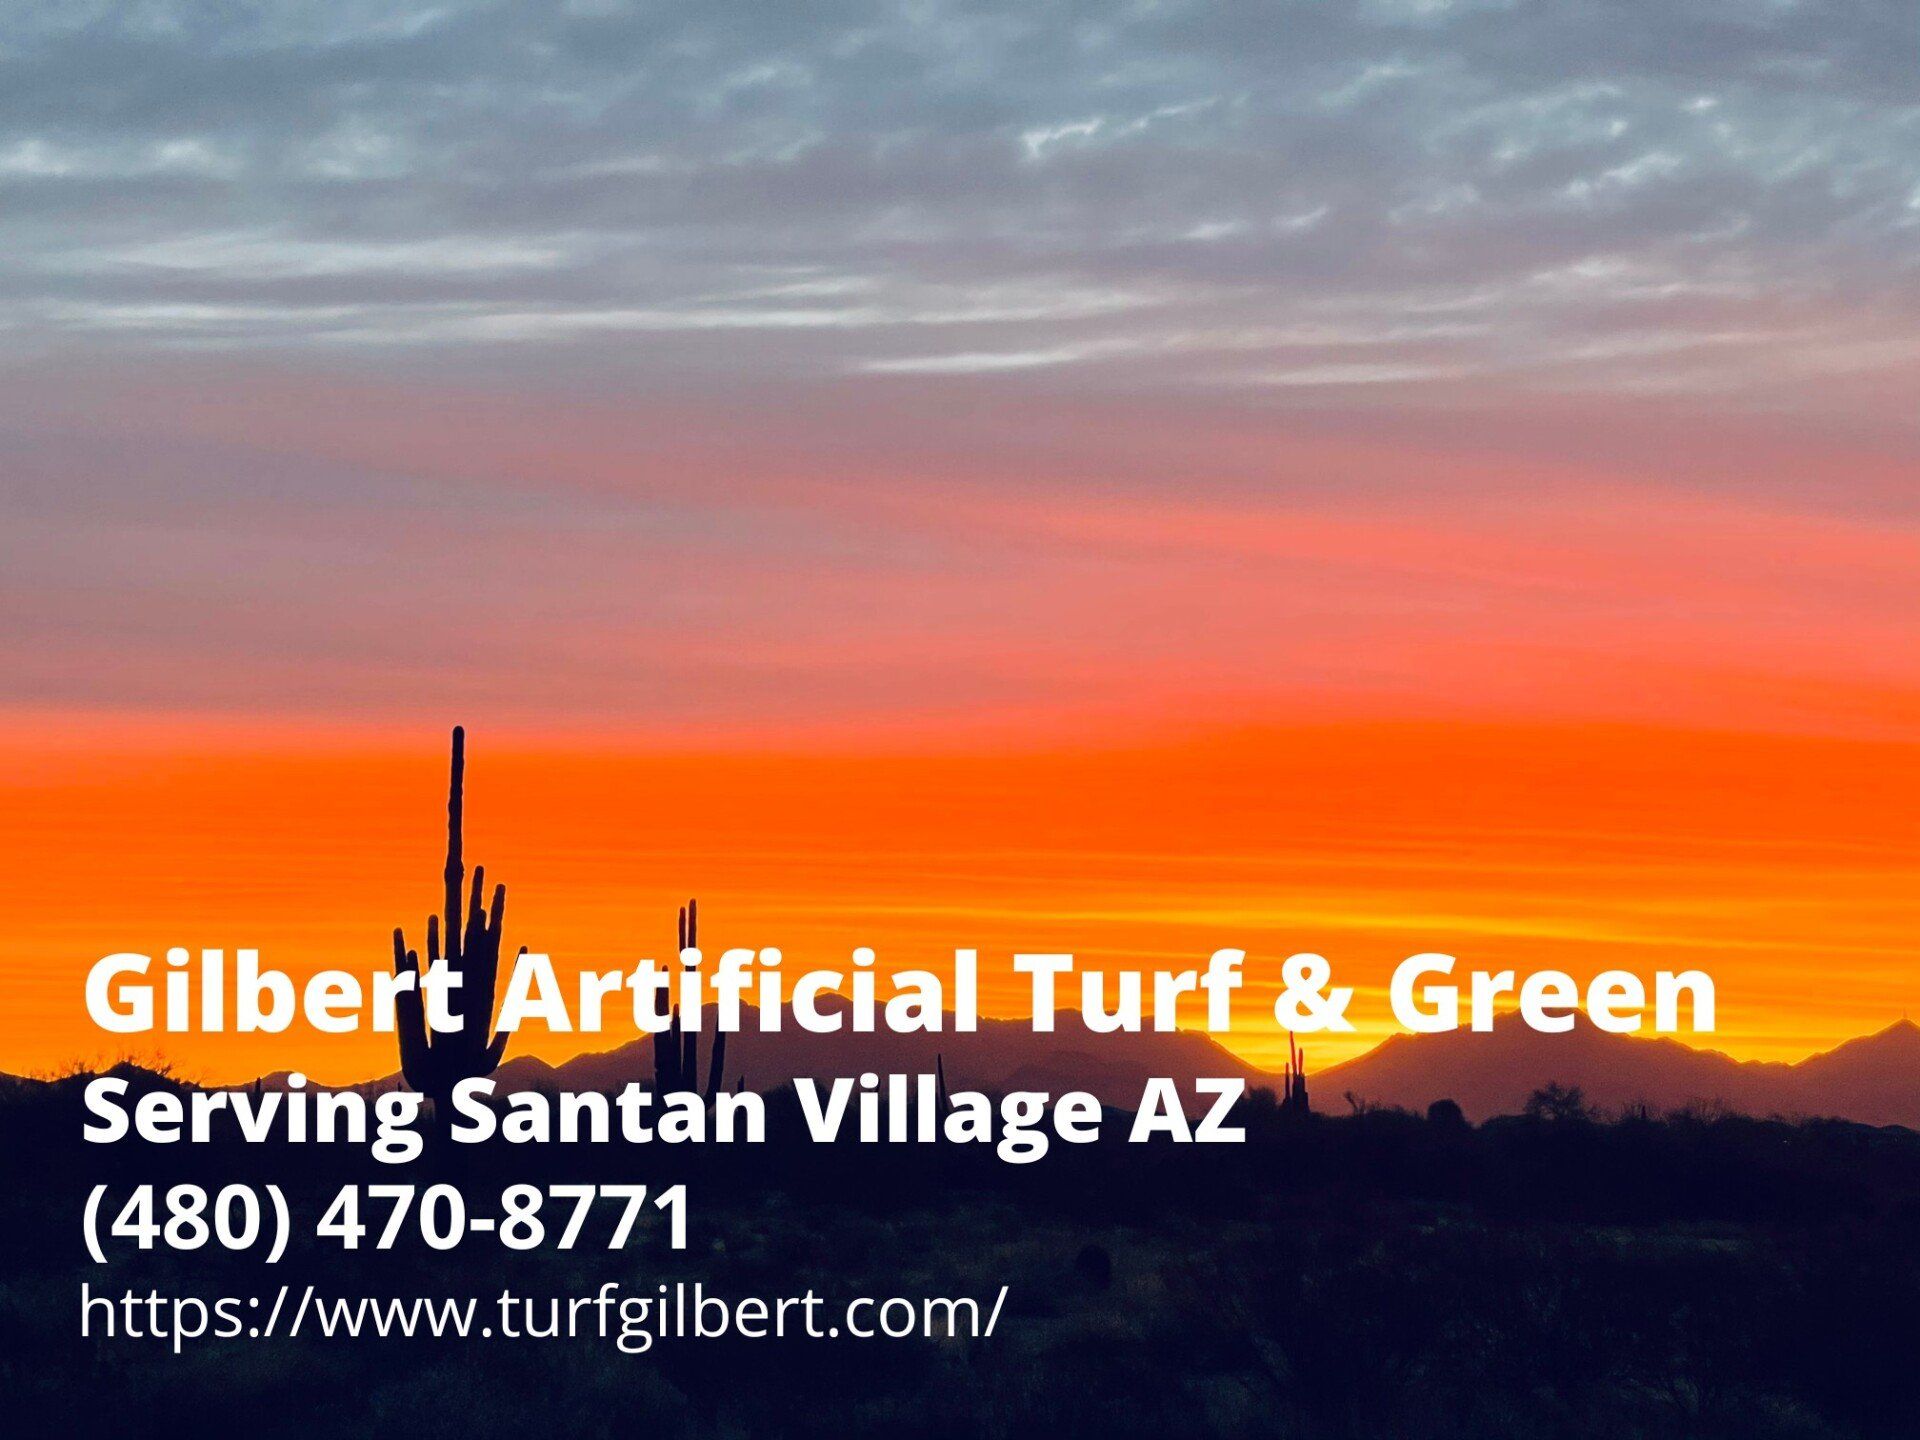 business info of Gilbert Artificial Turf & Green - an artificial turf installer in Santan Village, AZ